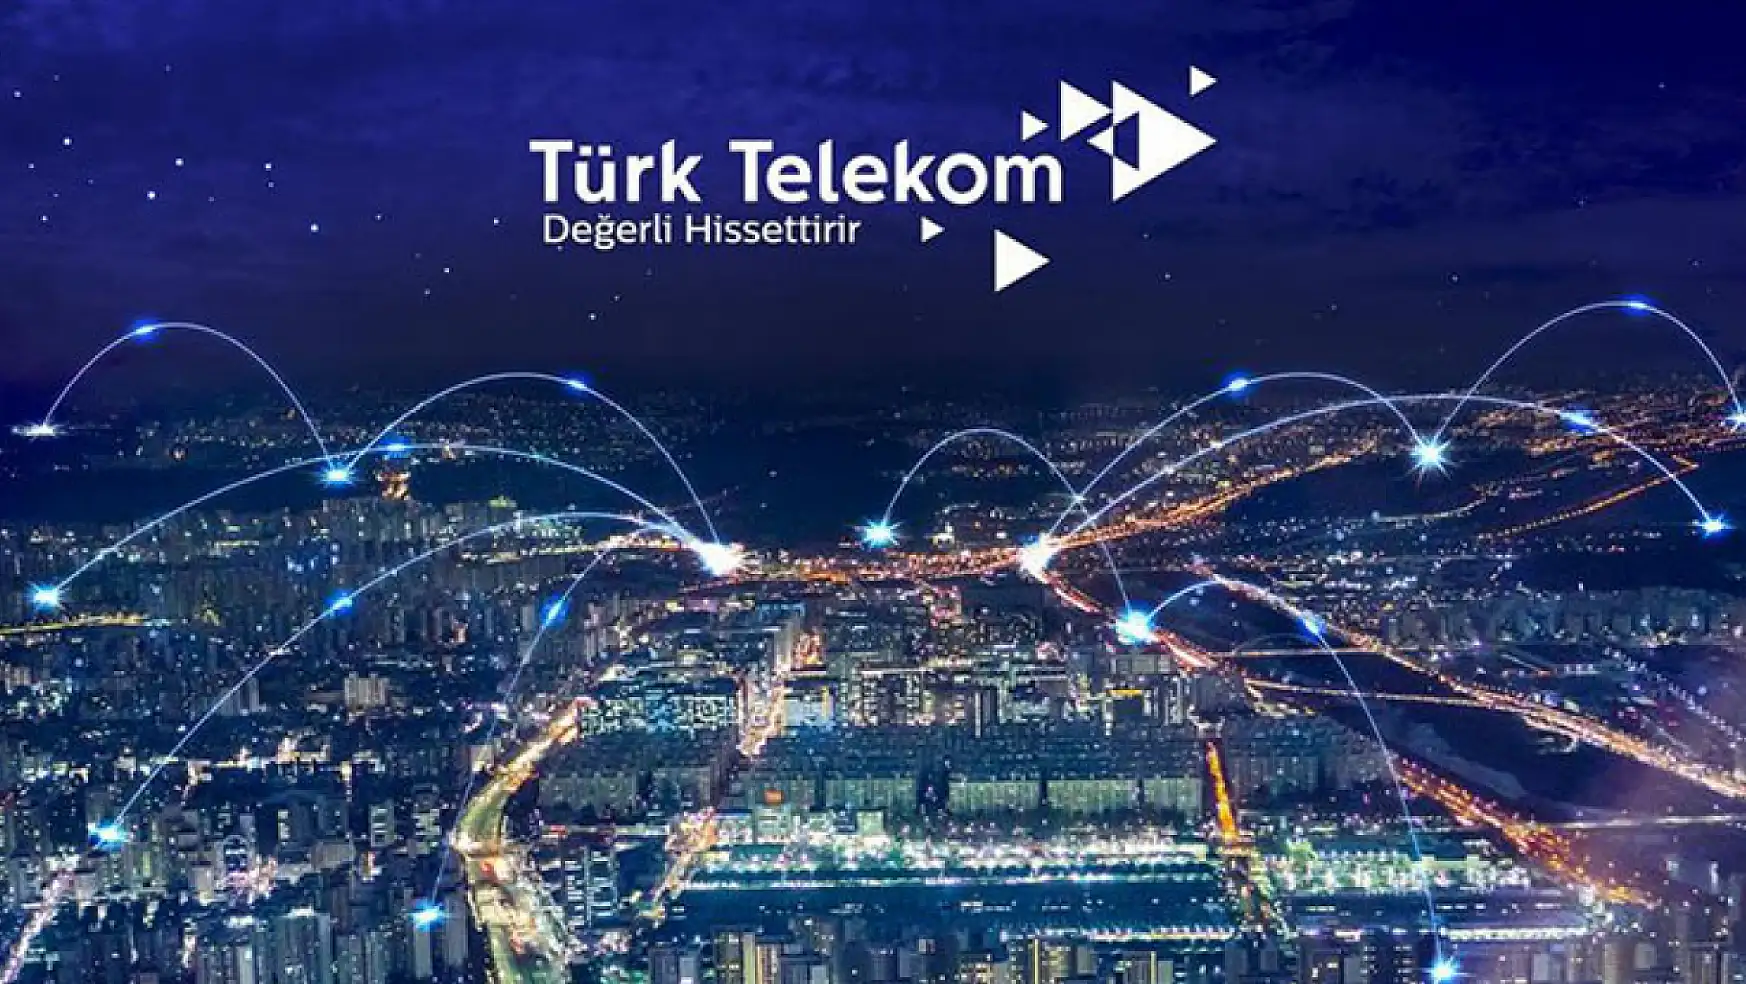 Türk Telekom, TFF ile imza töreni düzenlendi